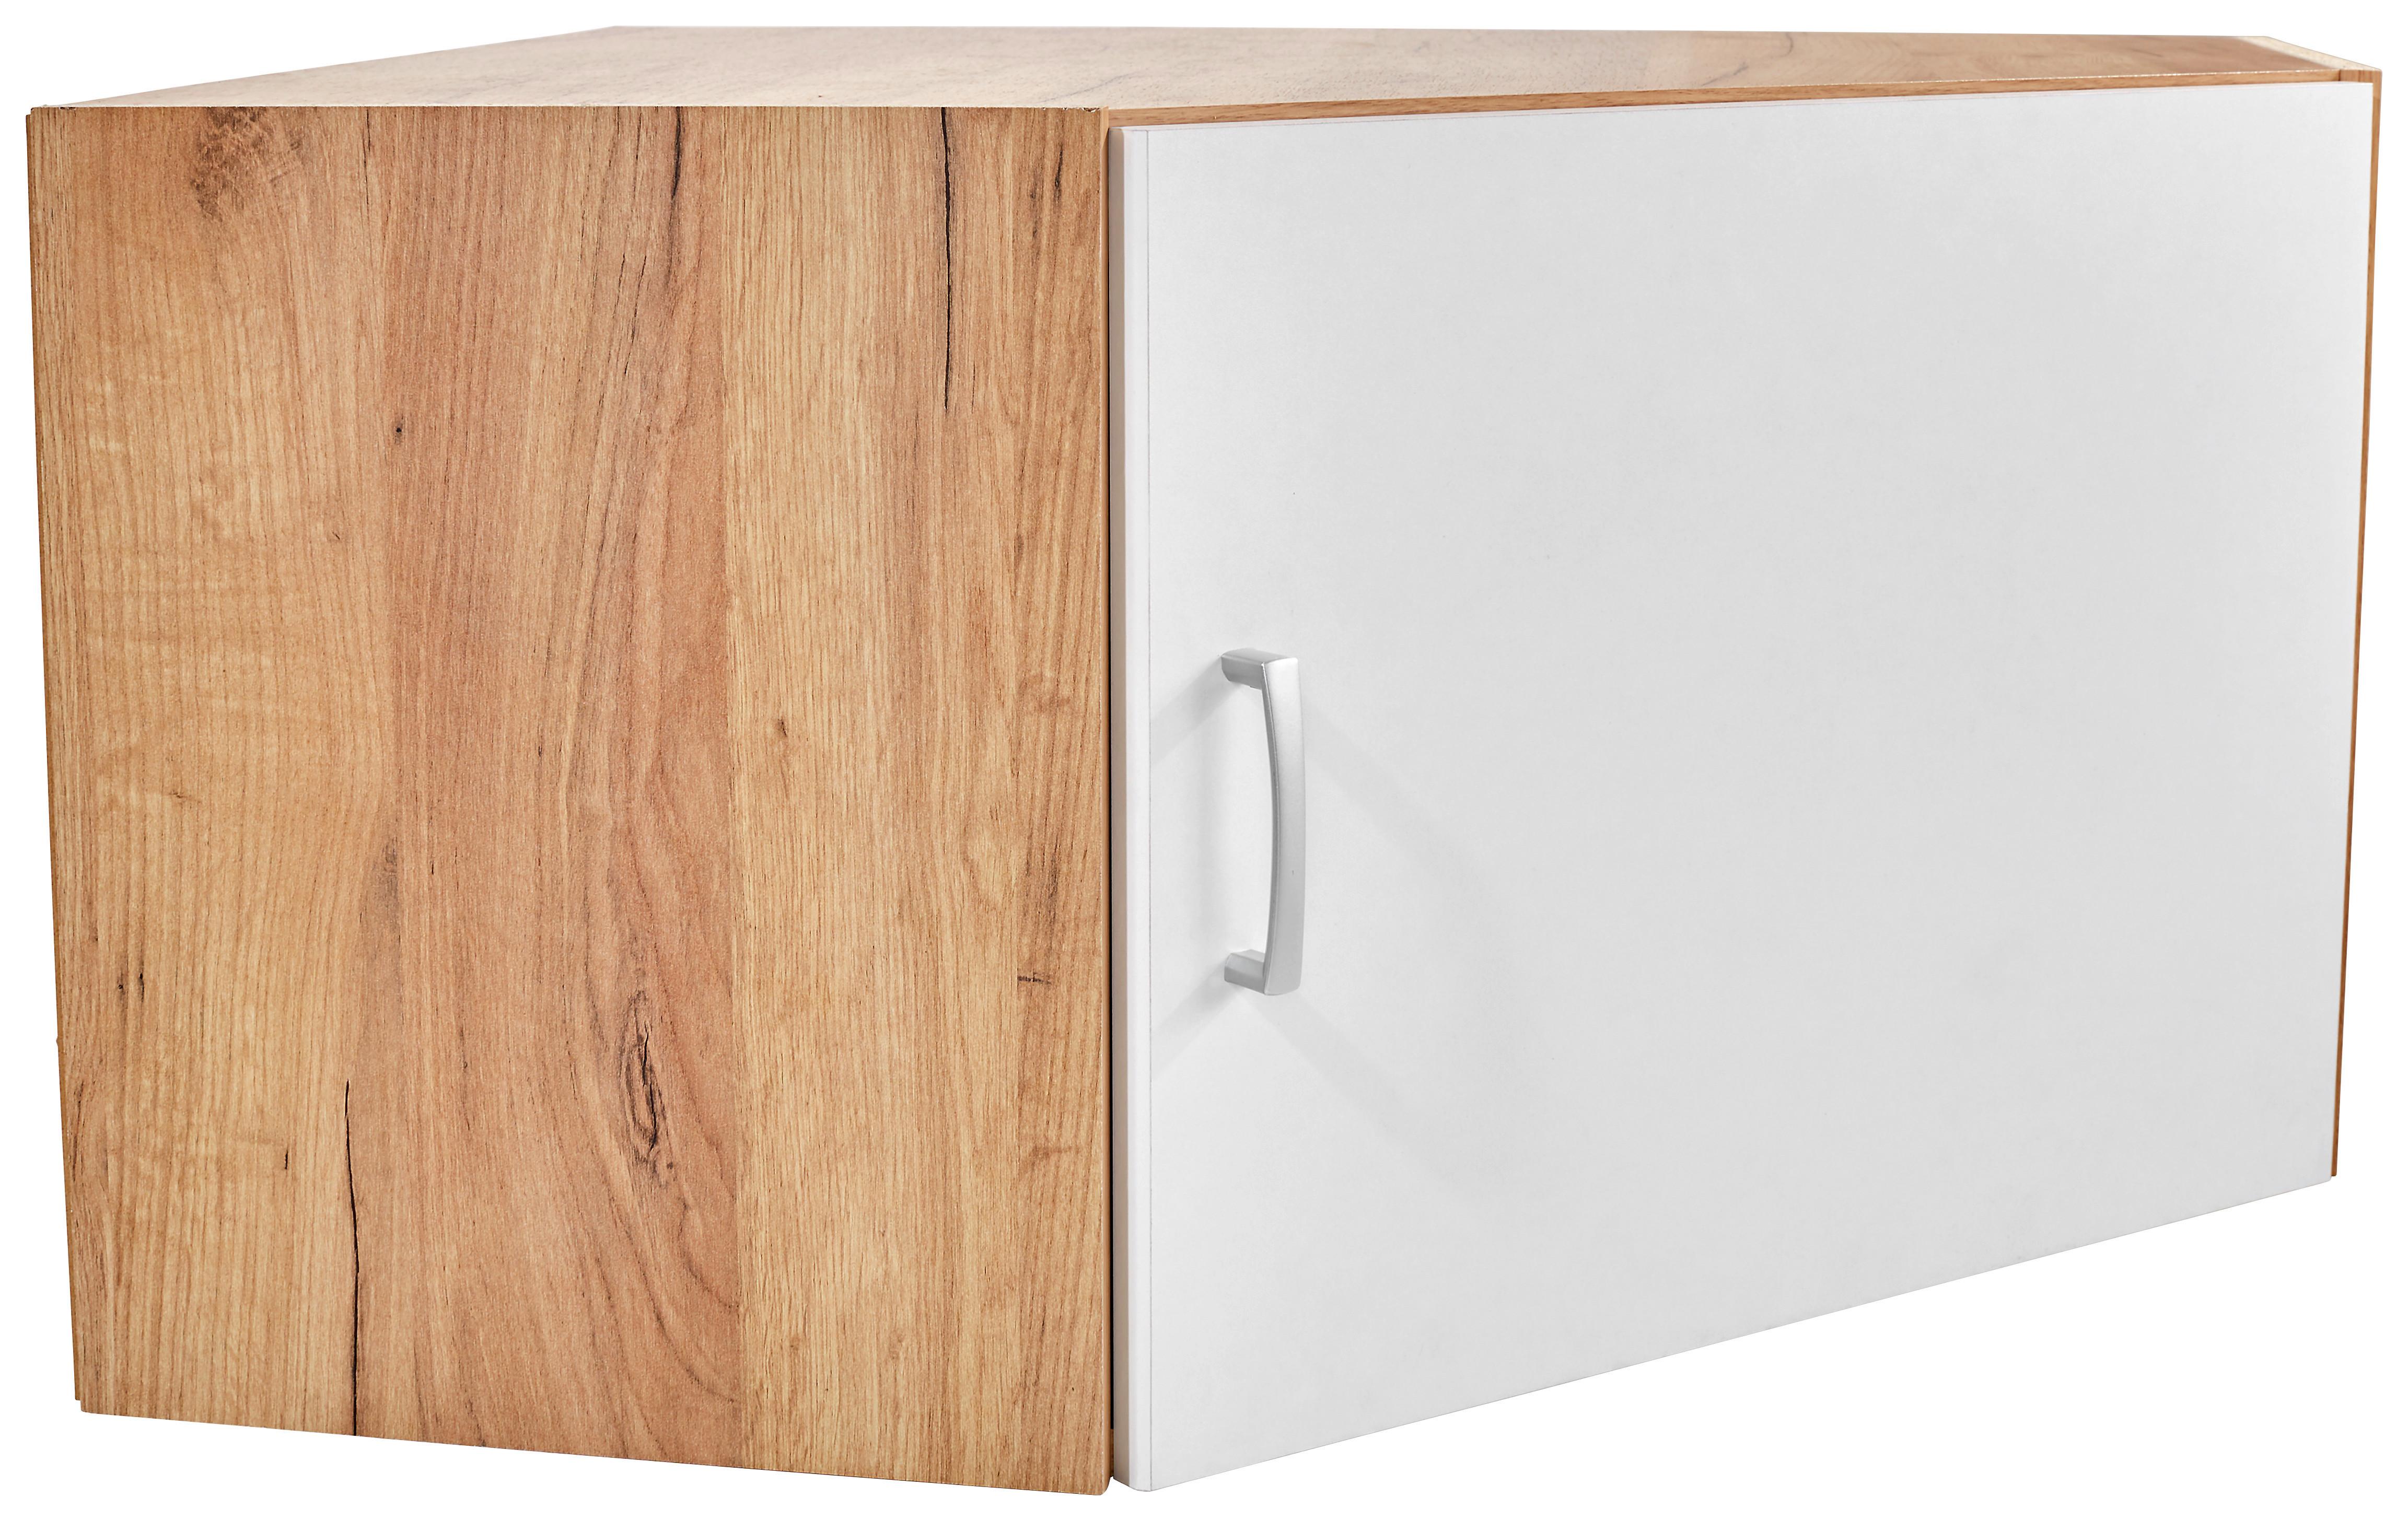 Dulap auxiliar superior Tio - alb/culoare lemn stejar, Konventionell, material pe bază de lemn (80/80cm)